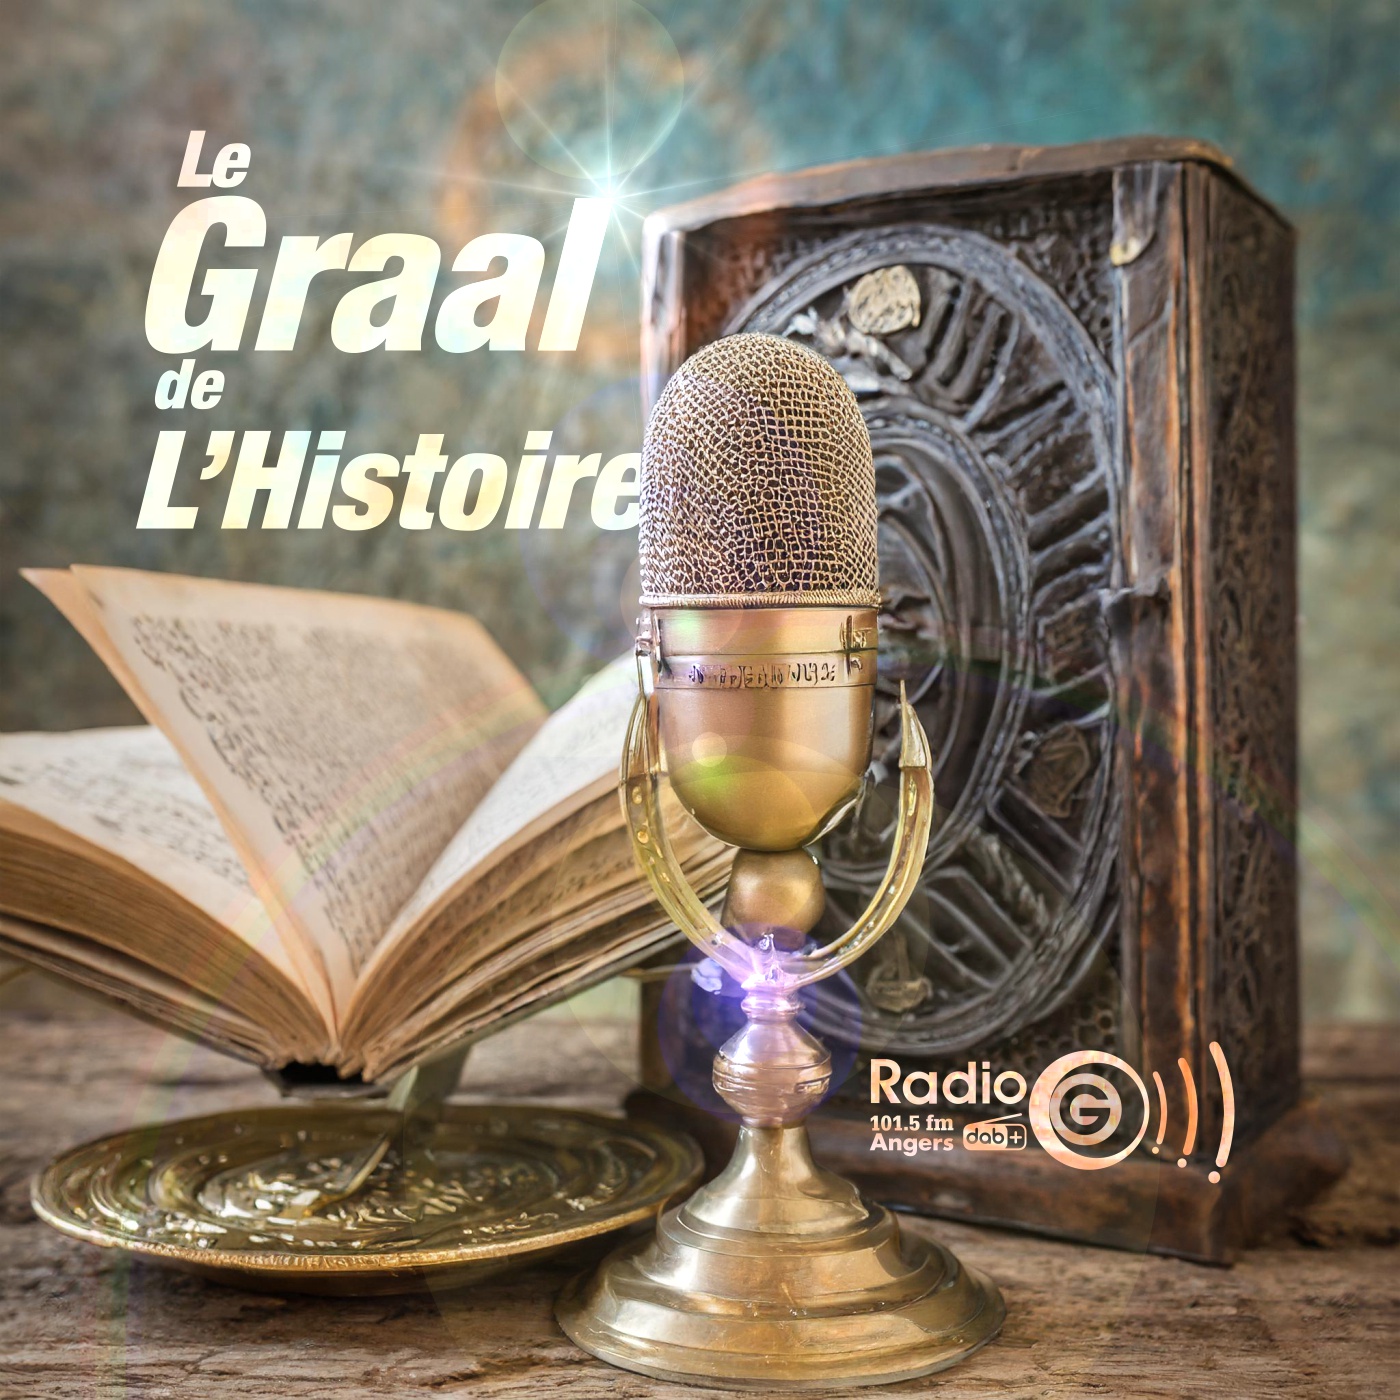 Graalv3 2 Le trône Le Graal de l'Histoire, un podcast avec des voix et des musiques en intelligence artificielles Graalv3 2 Le trône